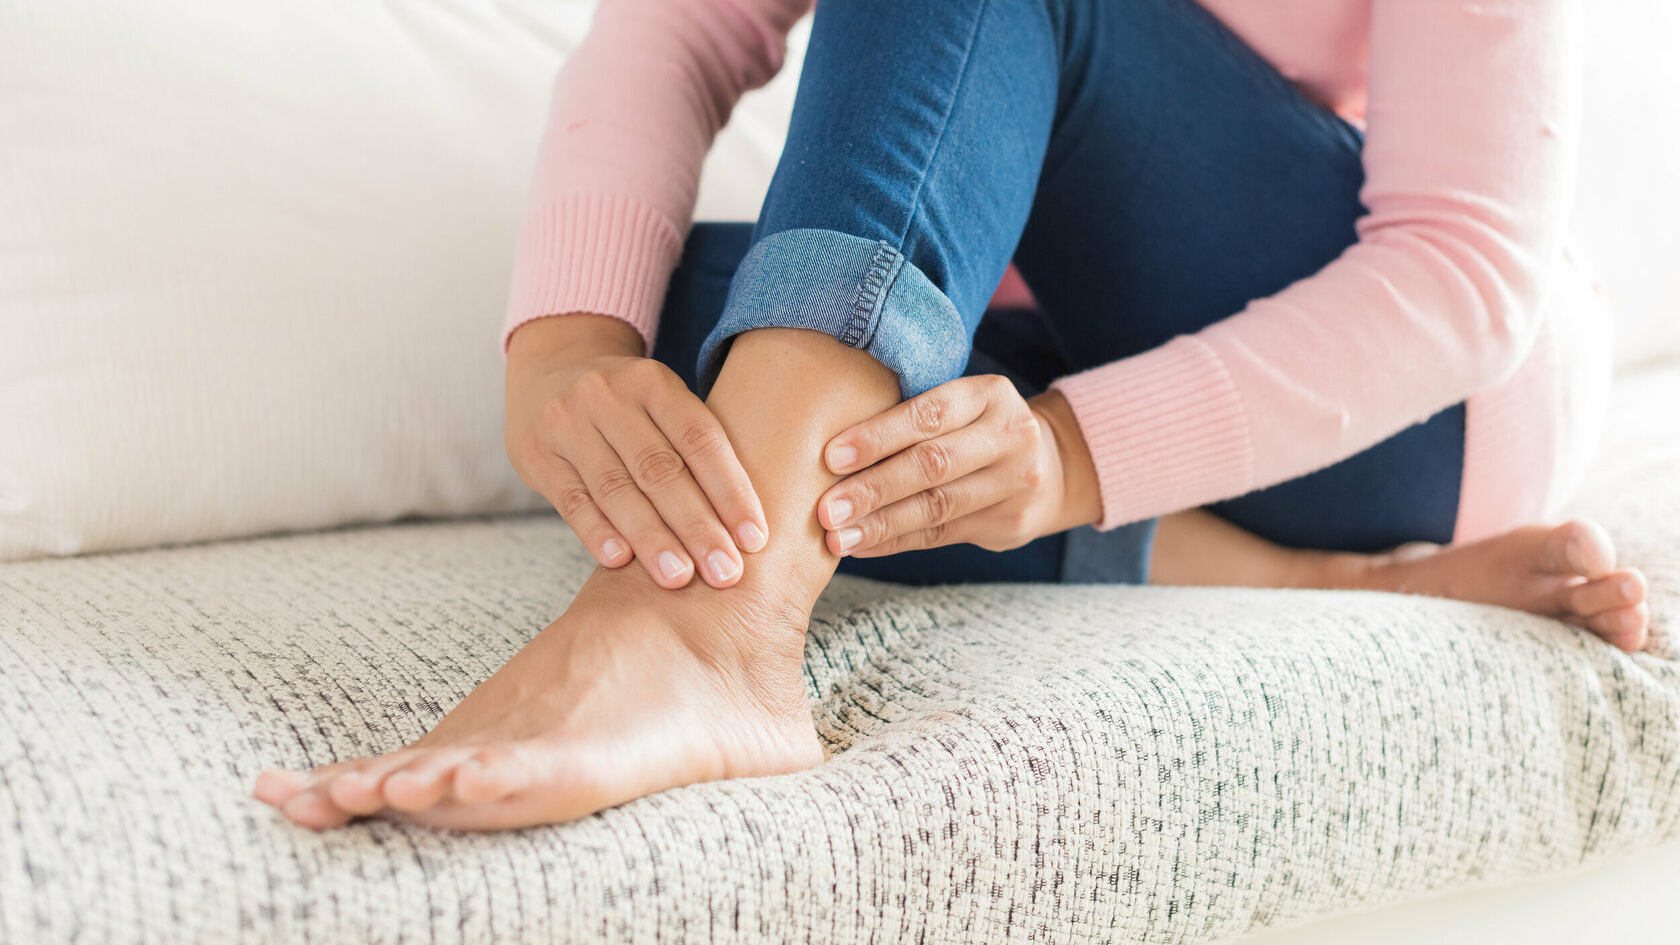 Причины, диагностика и лечение онемения стоп ног | Клиника Temed